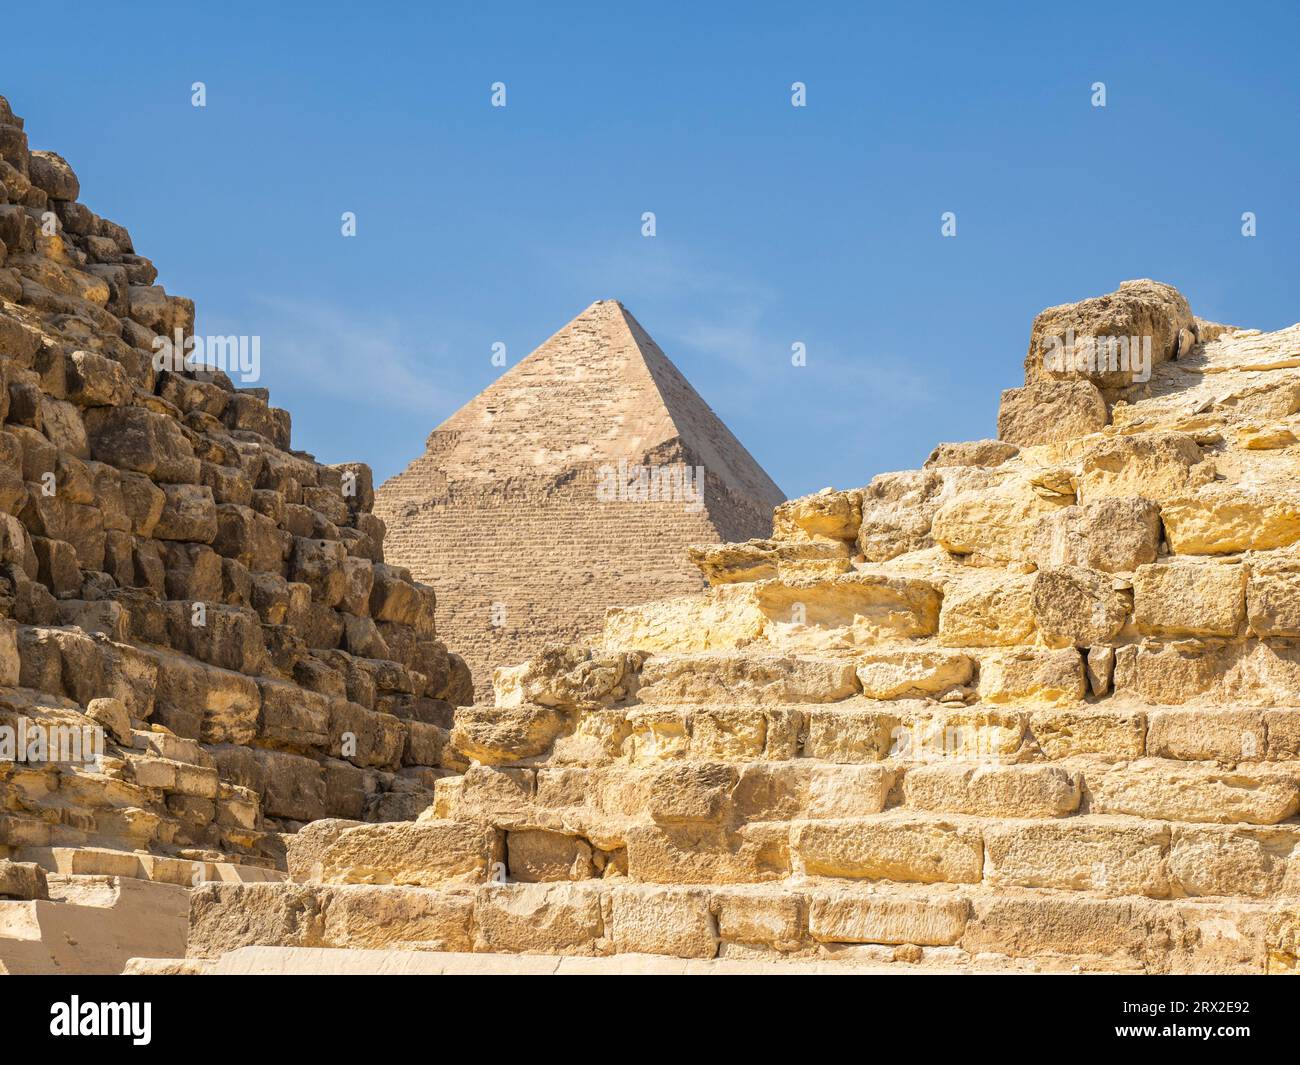 Pyramide de Khafre, site du patrimoine mondial de l'UNESCO, près du Caire, Egypte, Afrique du Nord, Afrique Banque D'Images